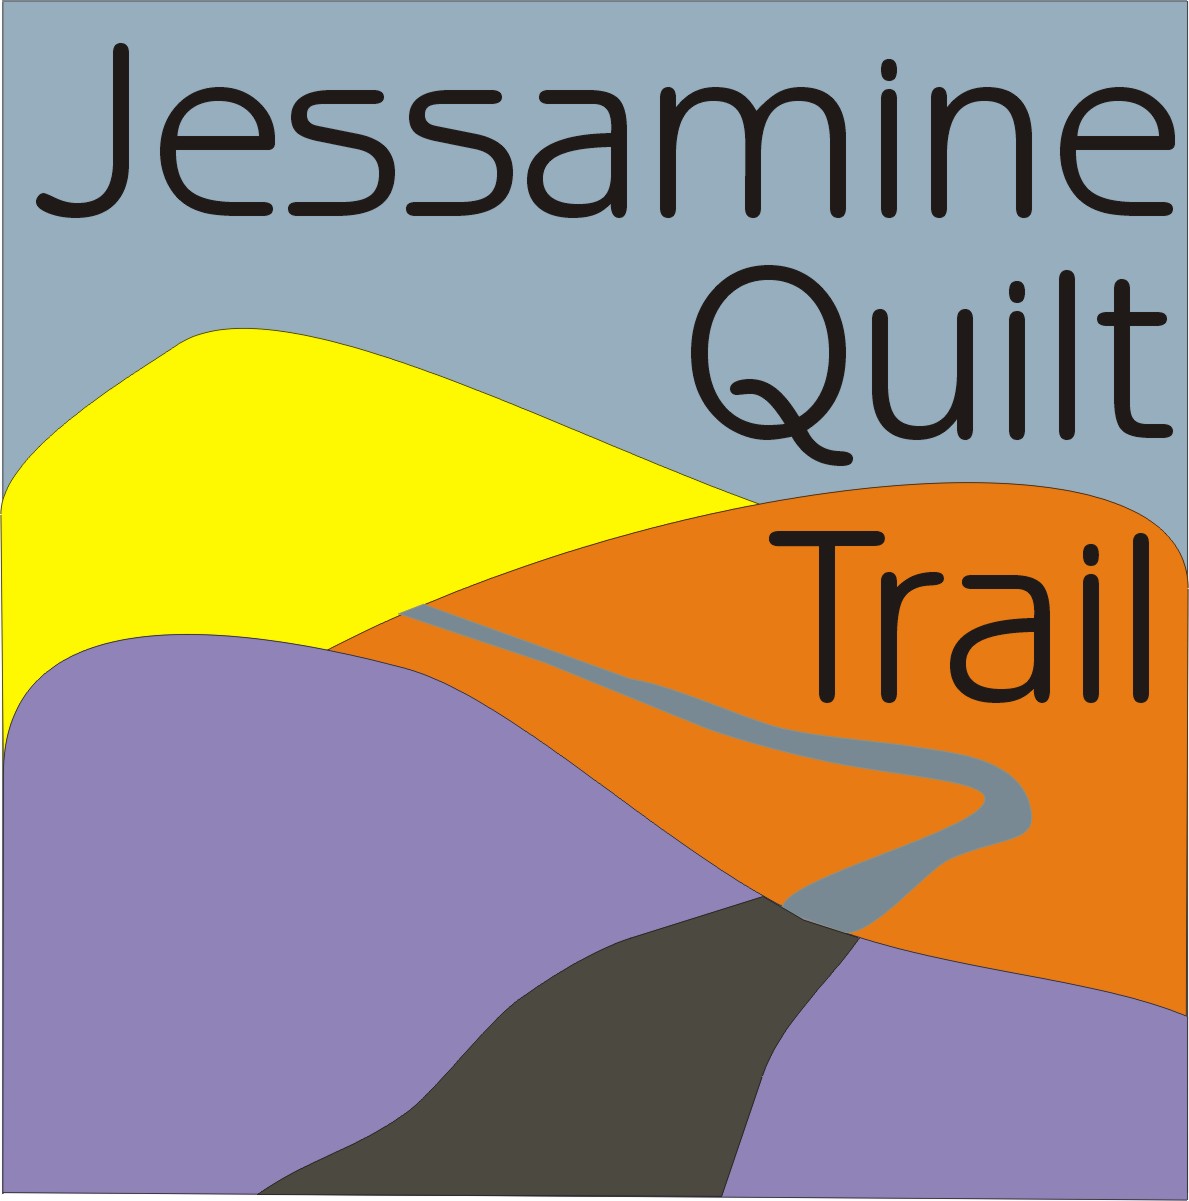 Jessamine County Quilt Trail Logo